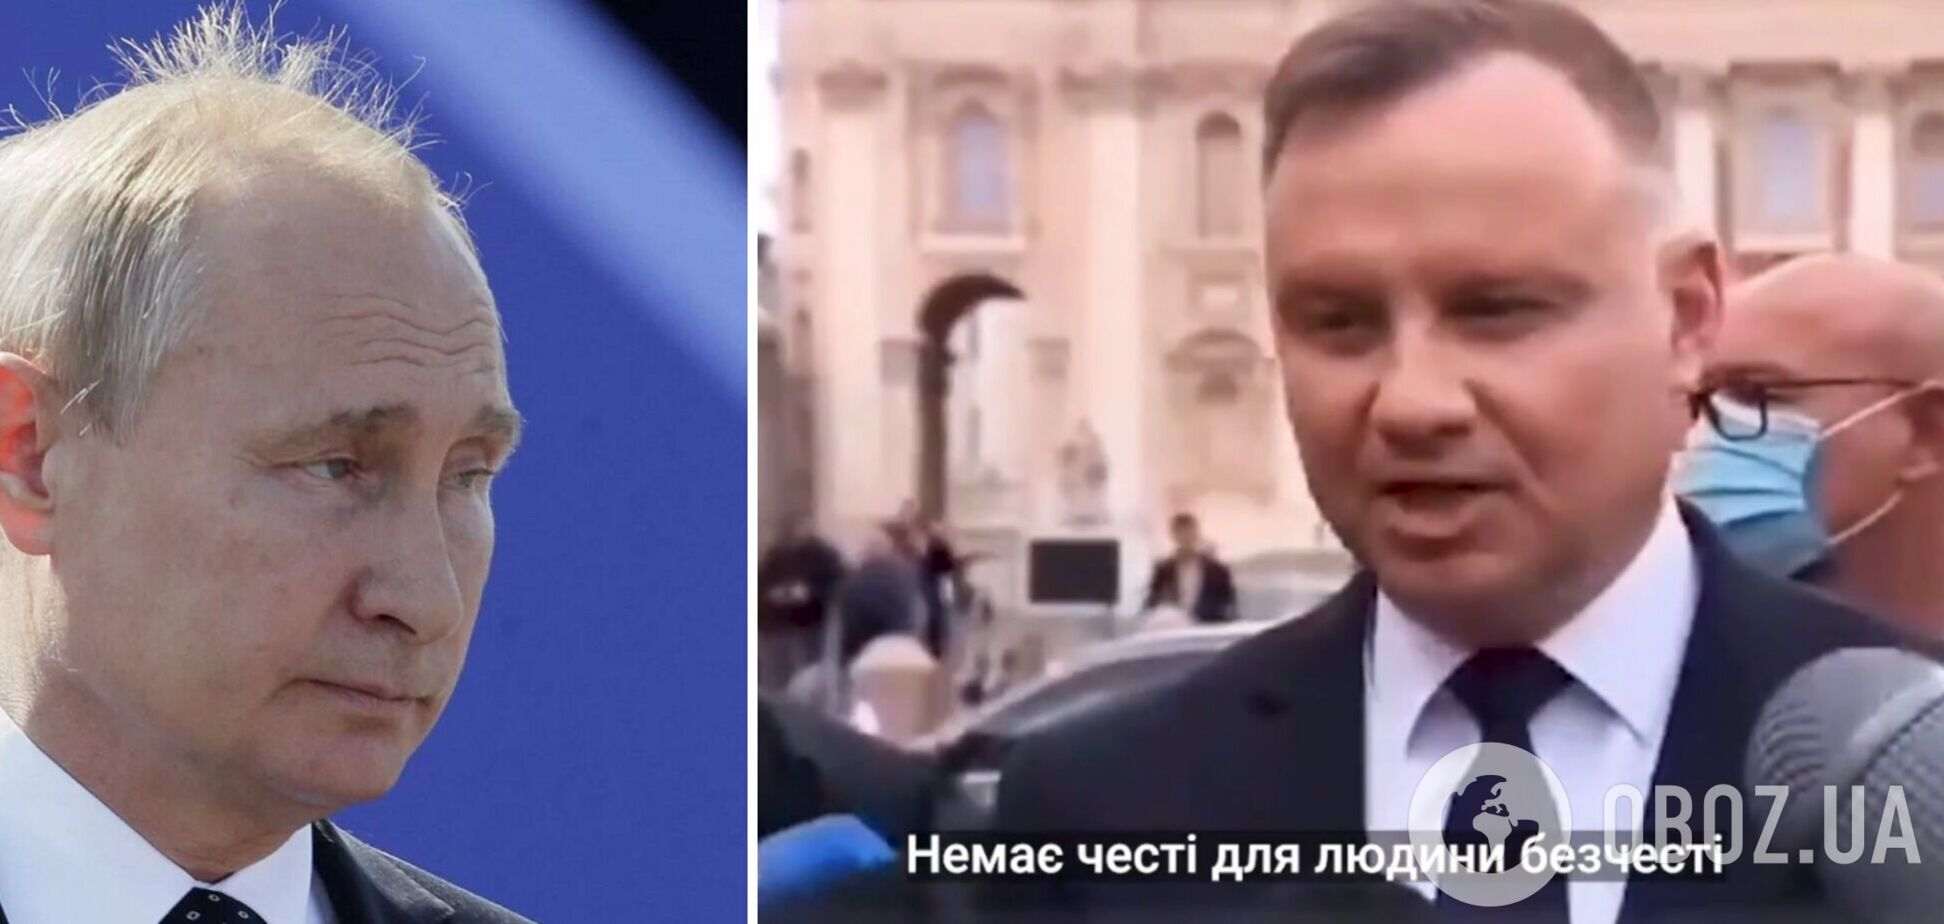 'Немає честі для людини без честі': Дуда різко відповів про долю Путіна, українці відреагували. Відео